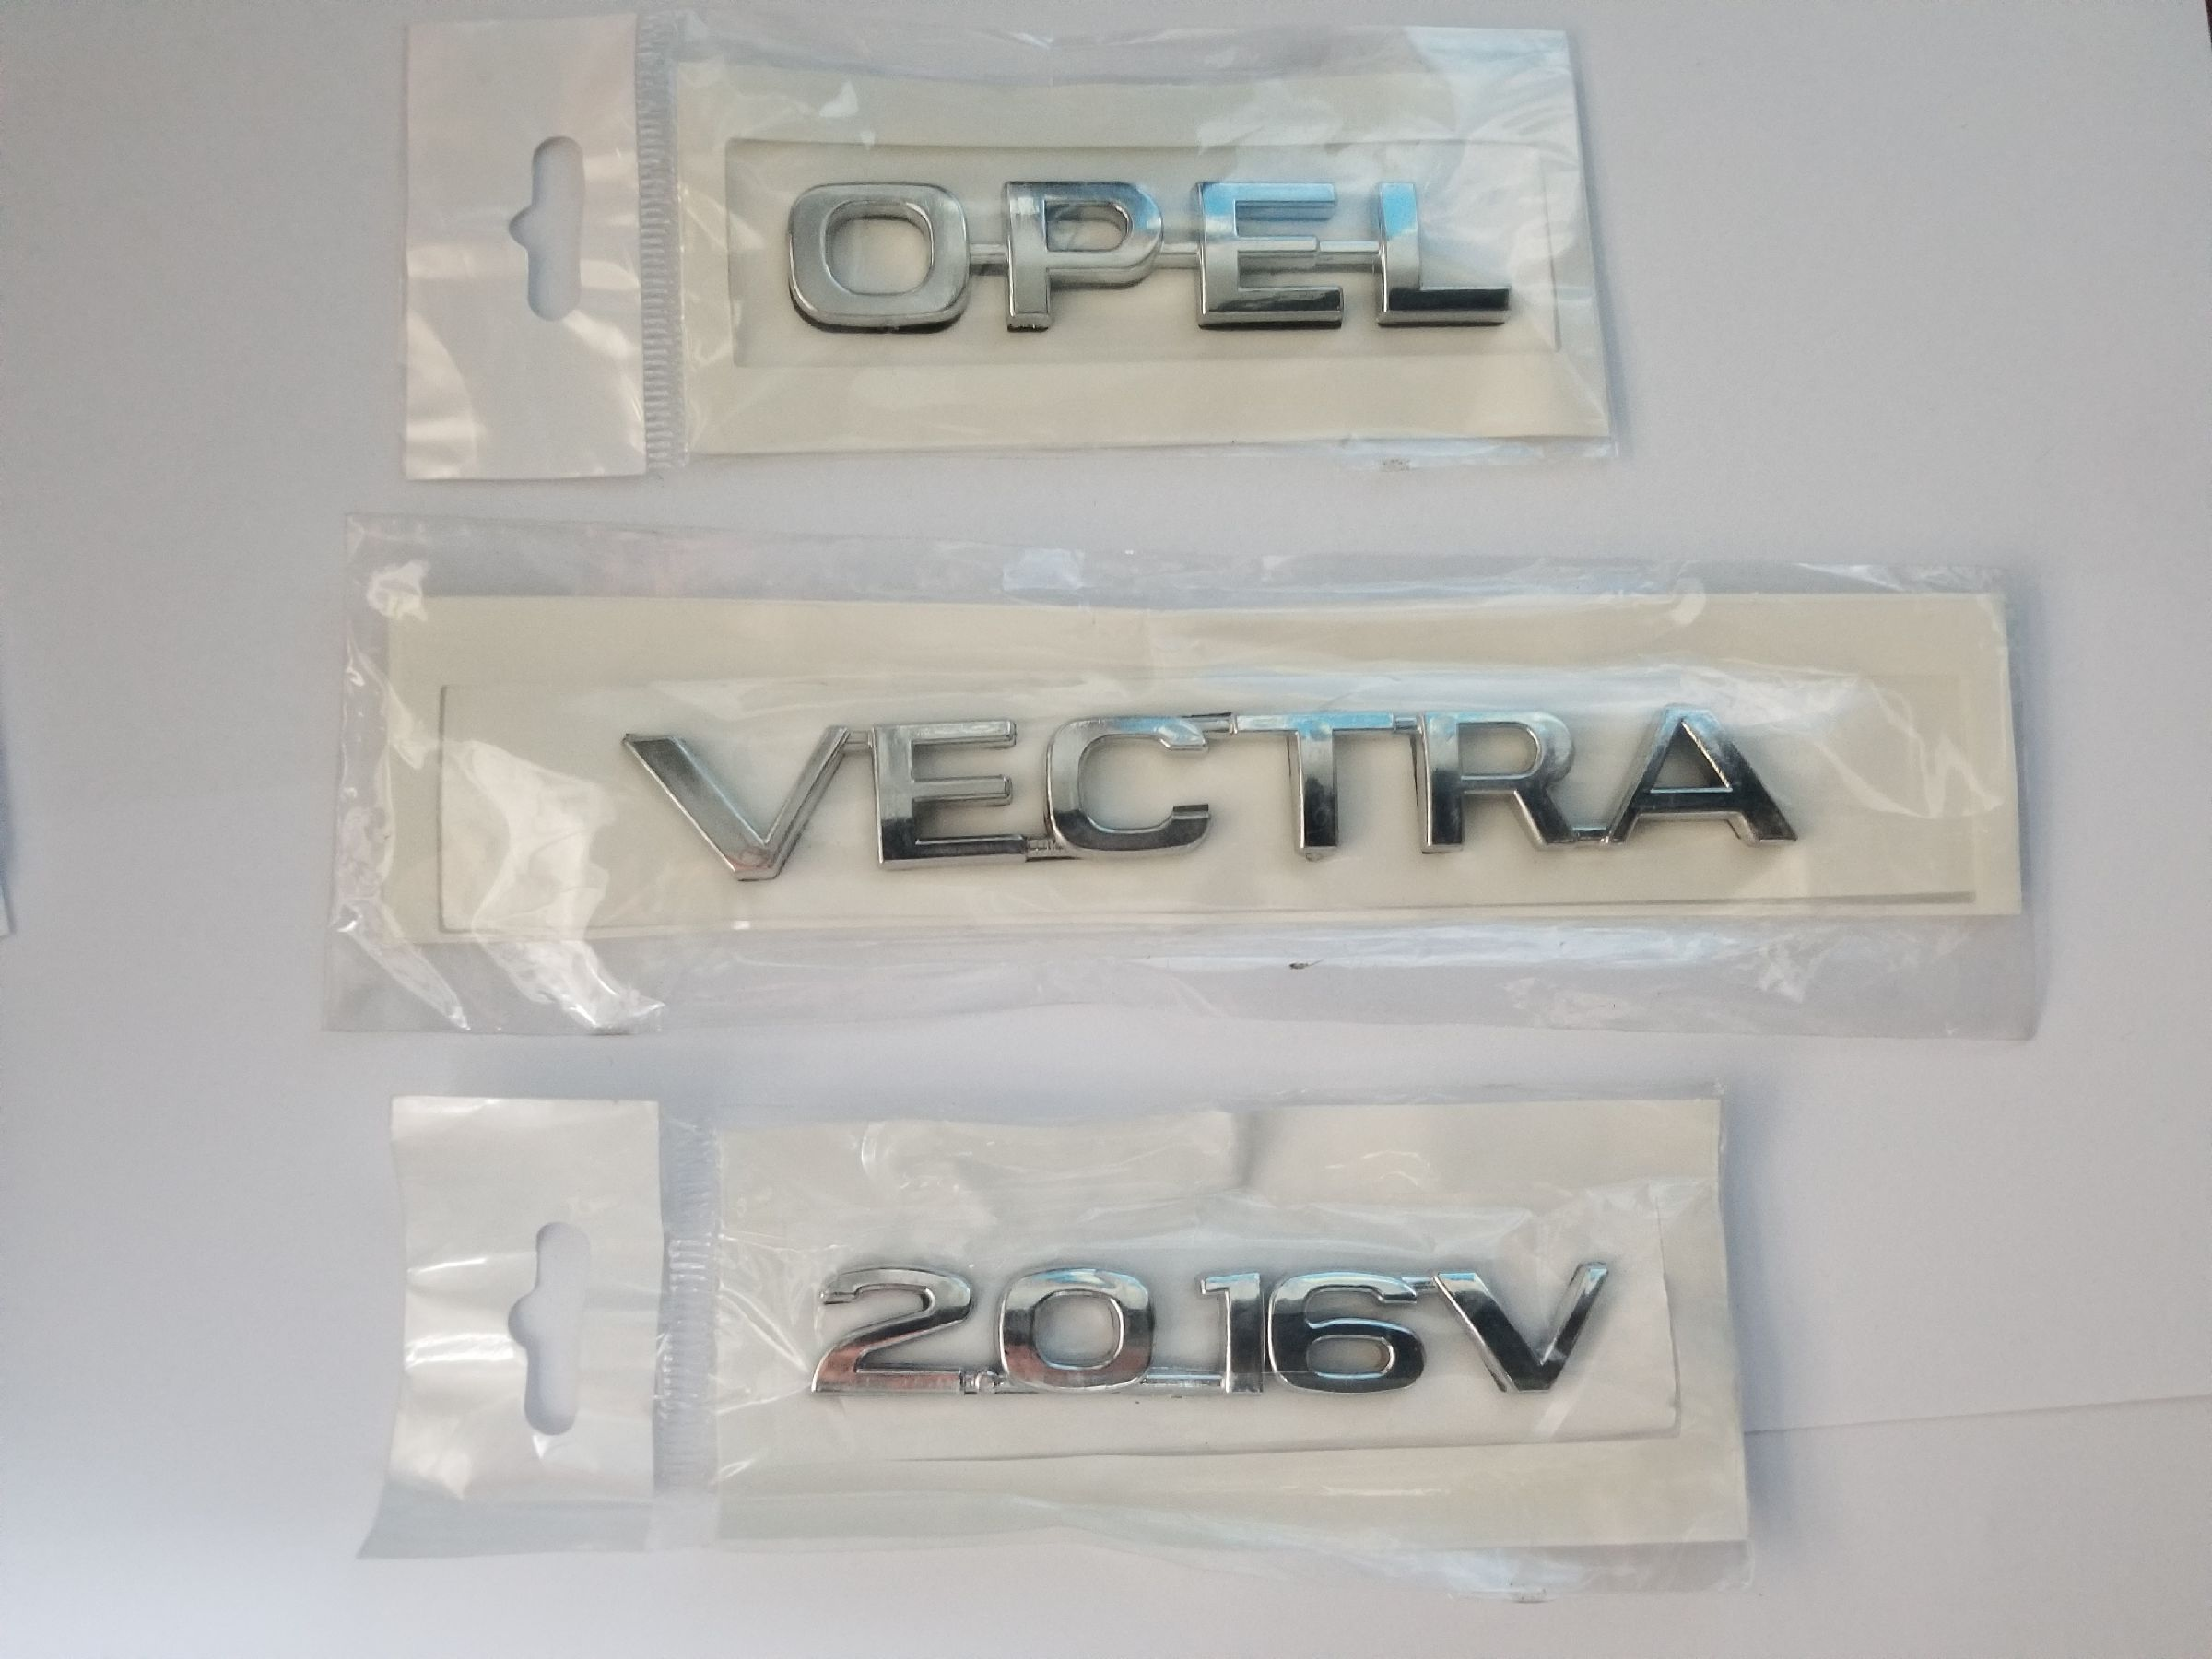 opel-vectra-2.0-16v-arka-bagaj-yazisi-krom-1.jpg